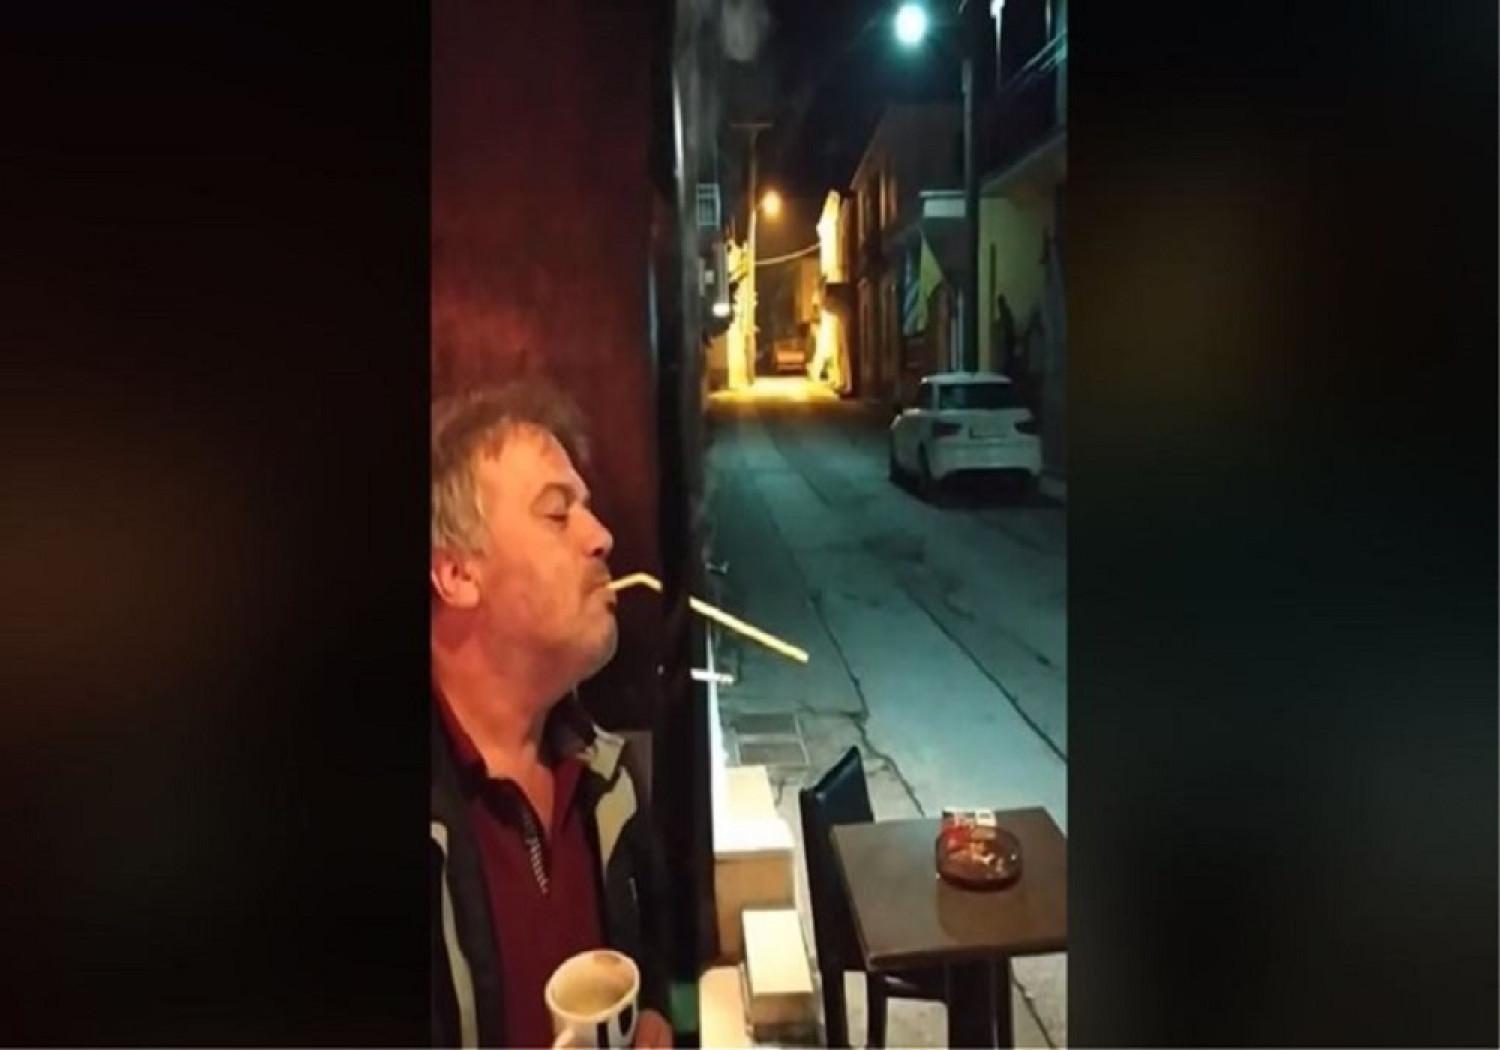 Θα κλάψετε! Έλληνας από τις Σέρρες βρήκε τη λύση για κάπνισμα σε δημόσιους χώρους-Πολύ γέλιο!